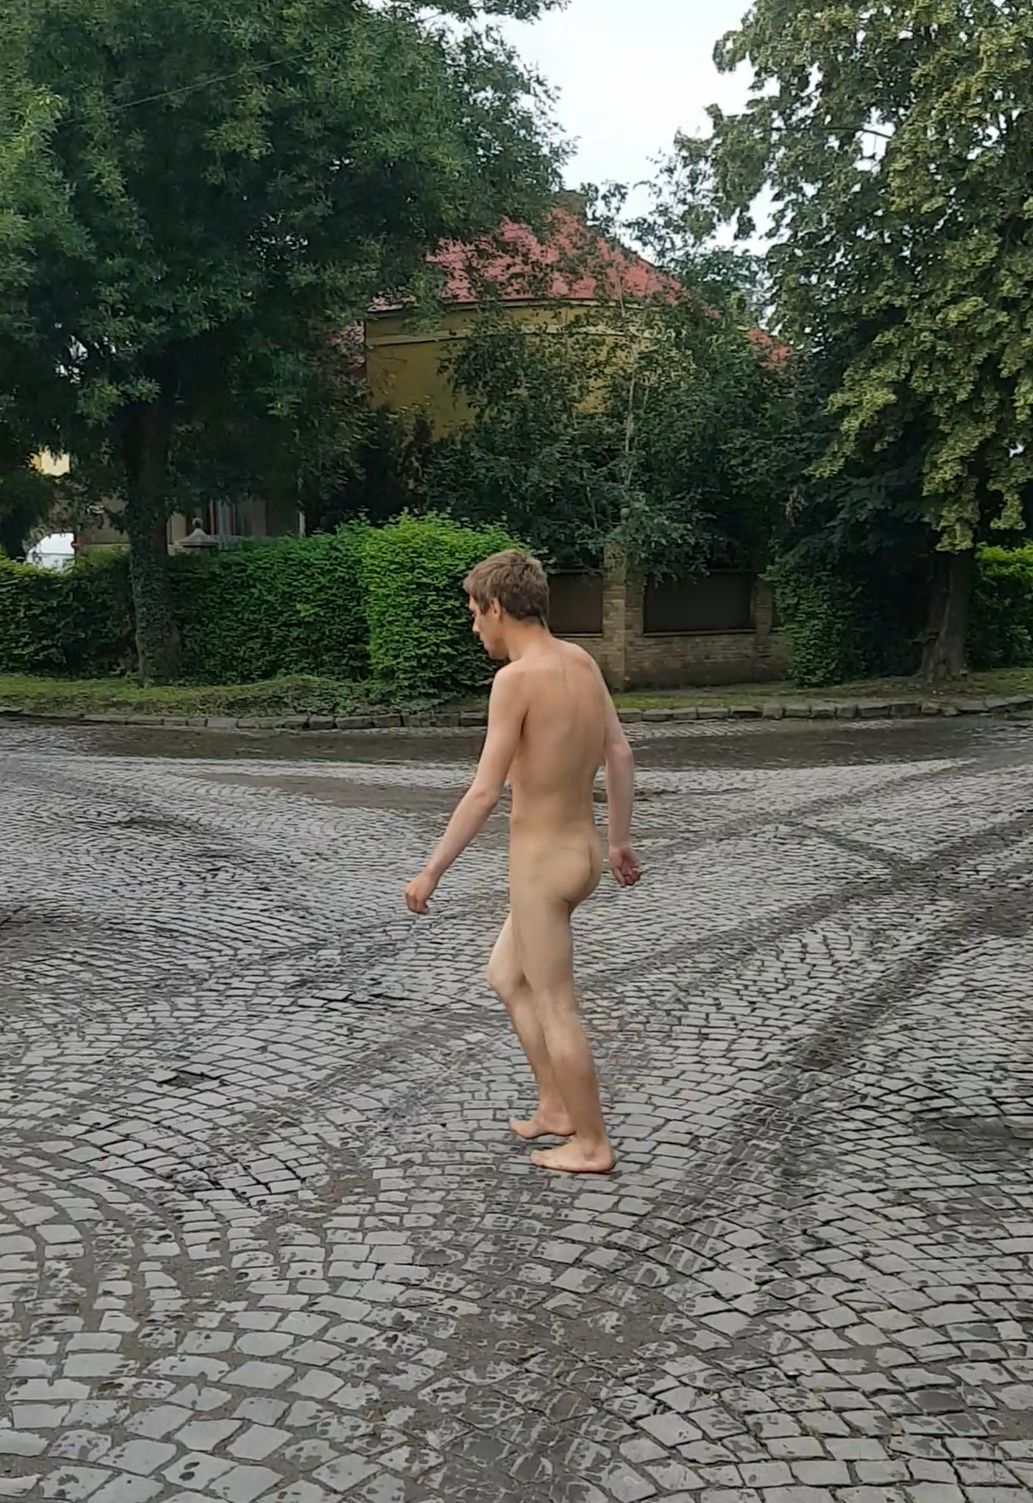 по городу гулял голый мужчина фото 6